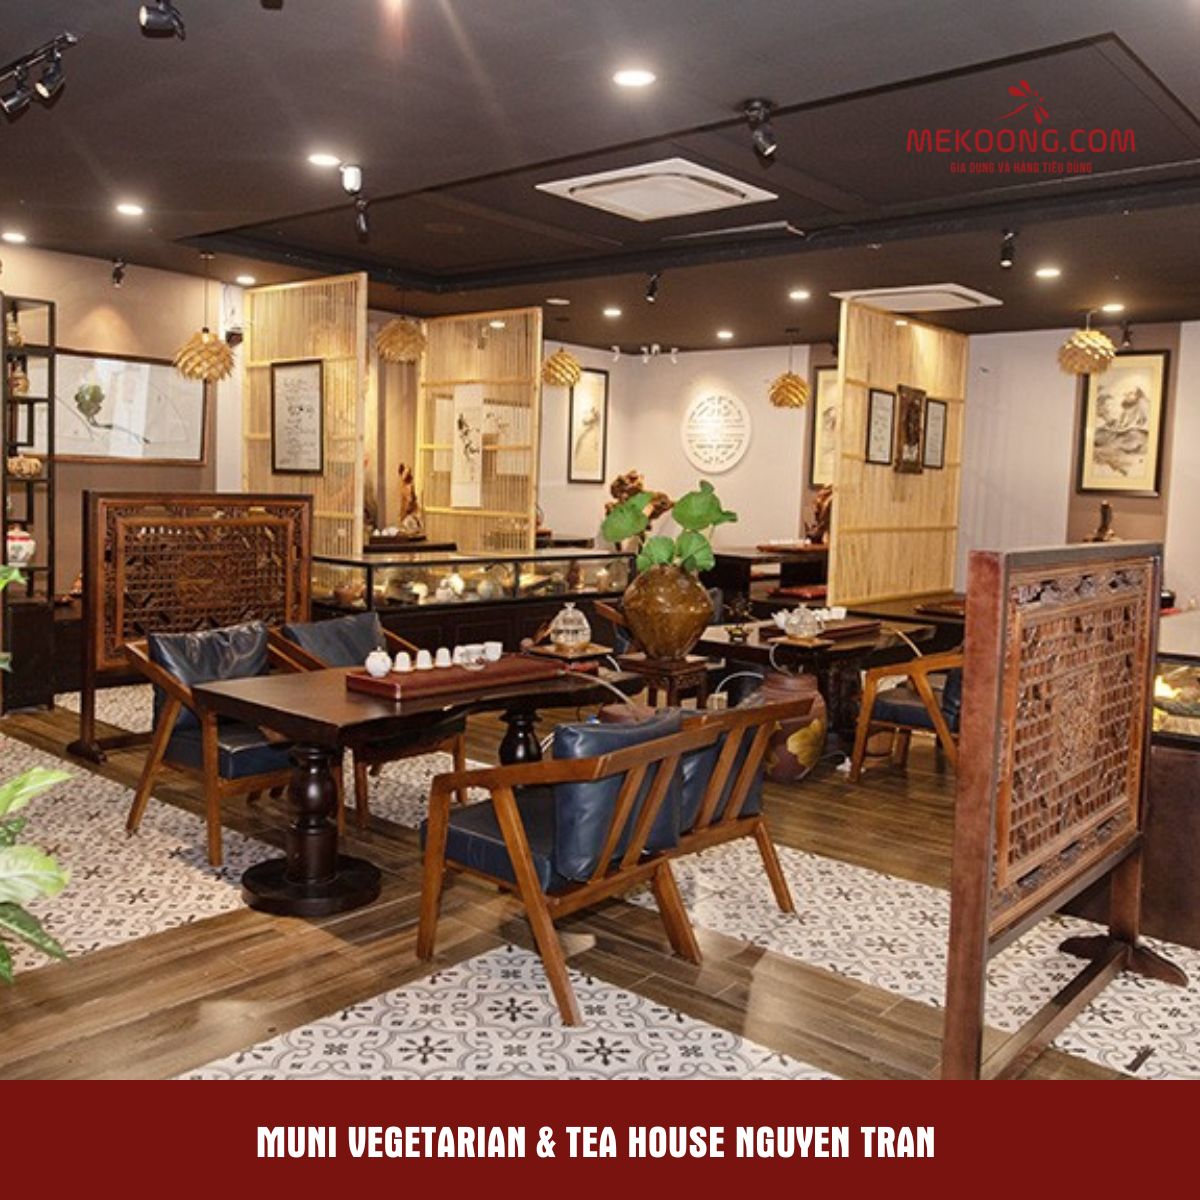 Muni Vegetarian Tea house Nguyen Tran 1